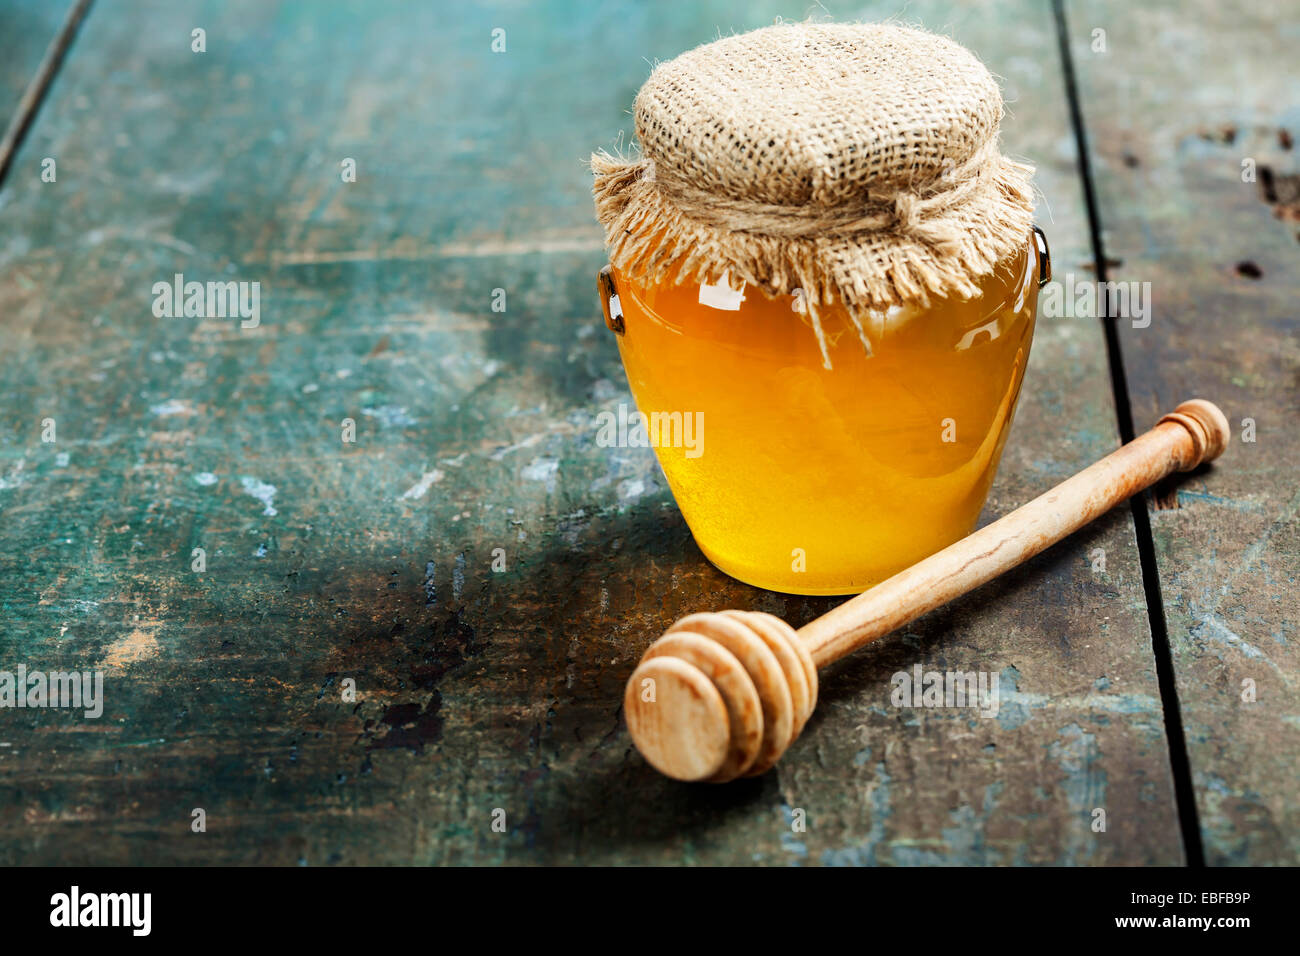 Tarro de miel y penetrador sobre fondo de madera Foto de stock